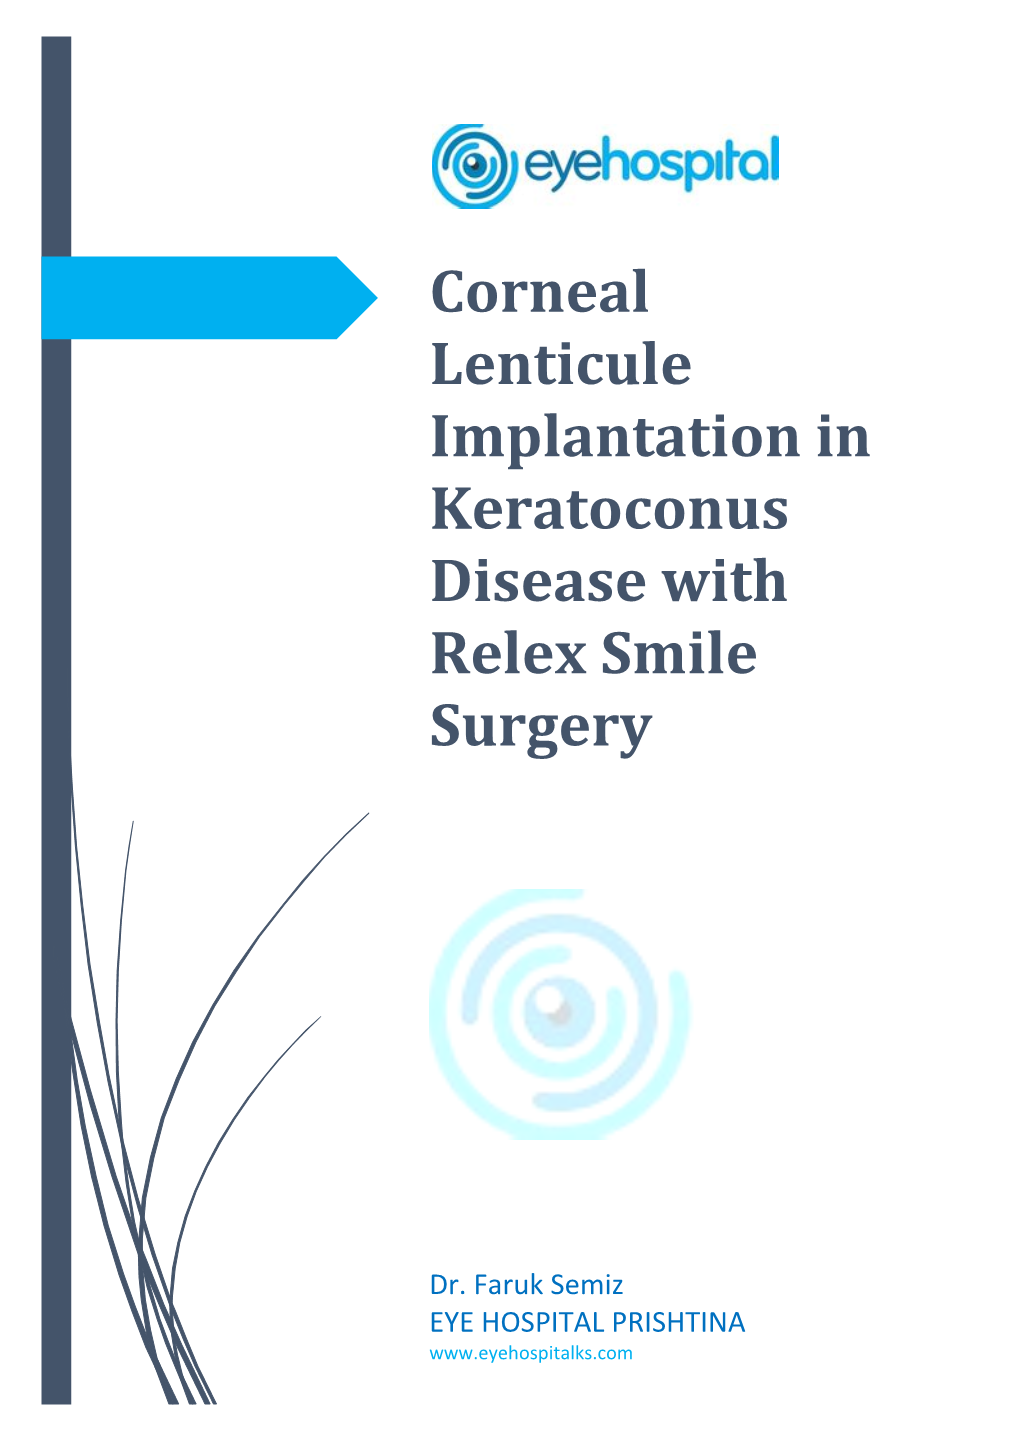 Corneal Lenticule Implantation in Keratoconus Disease with Relex Smile Surgery